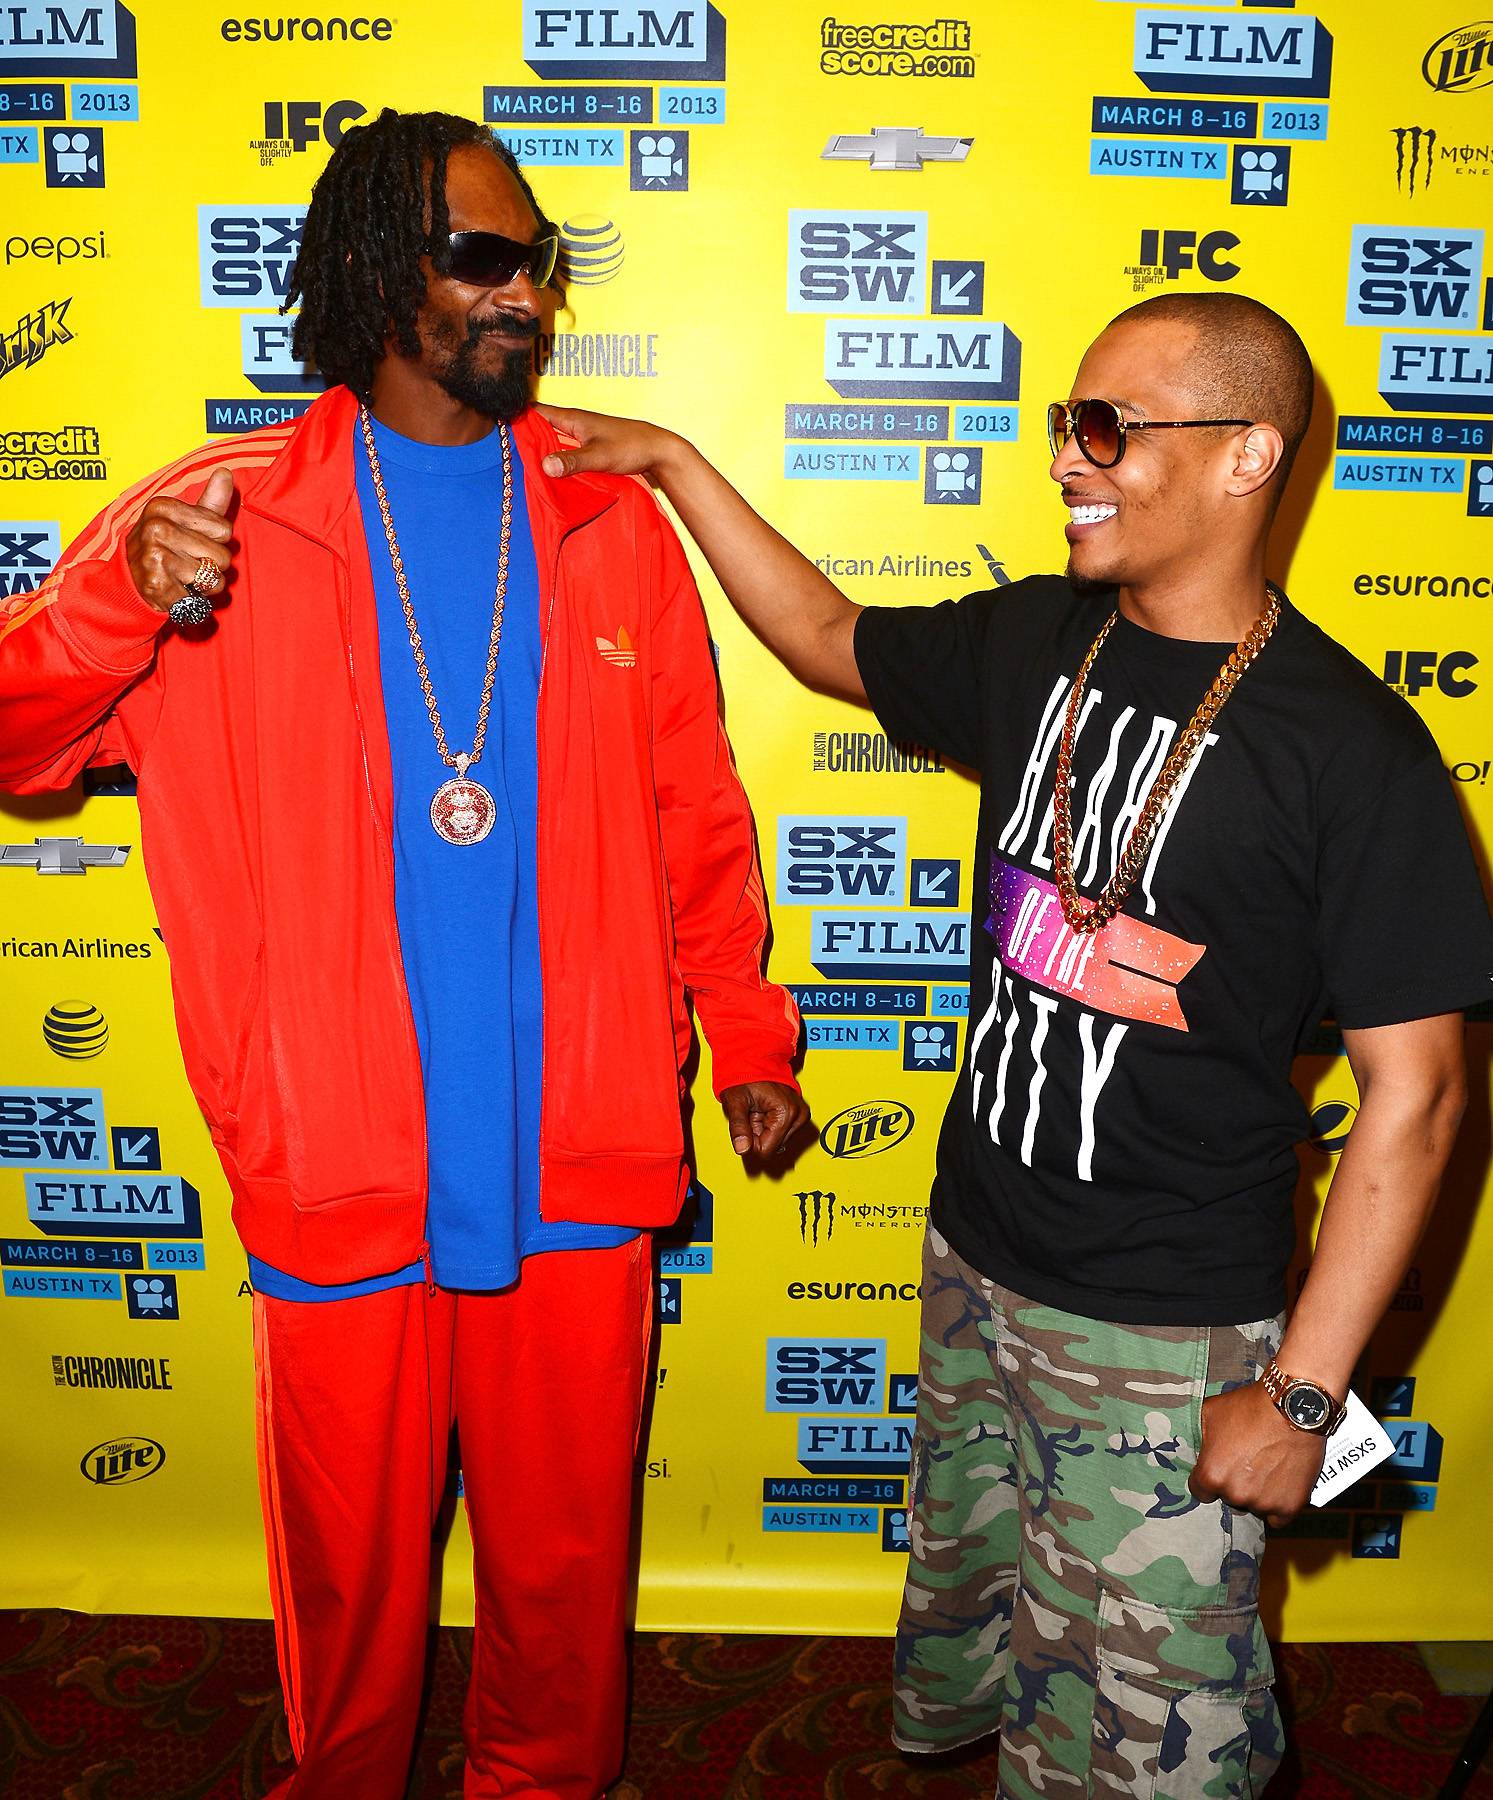 Snoop Dogg Snoop Lion T.I. SxSW